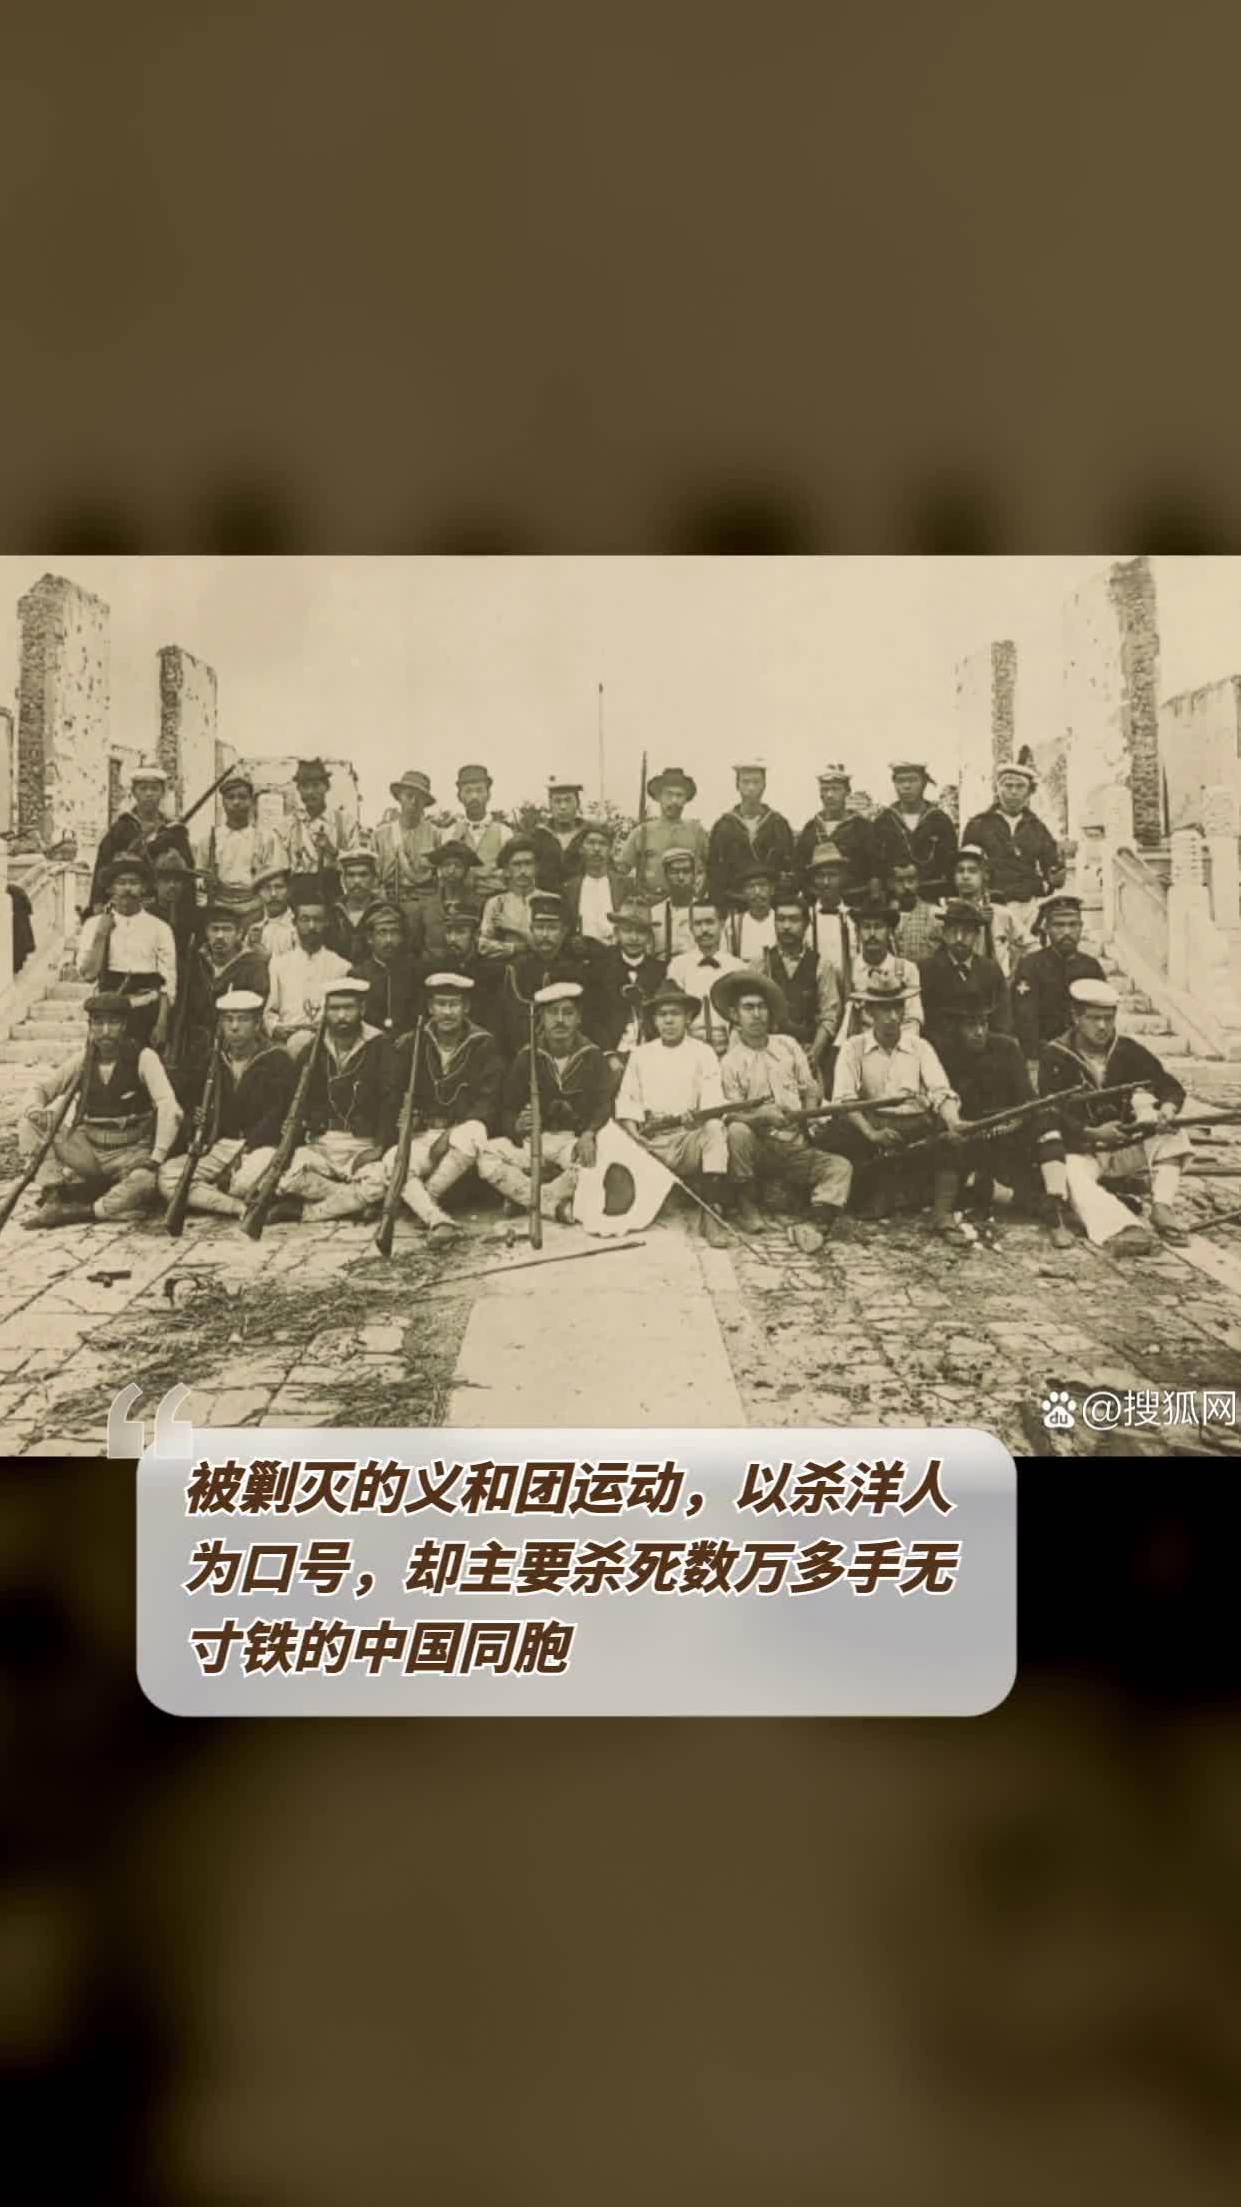 被剿灭的义和团运动,以杀洋人为口号,却主要杀死数万多手无寸铁的中国